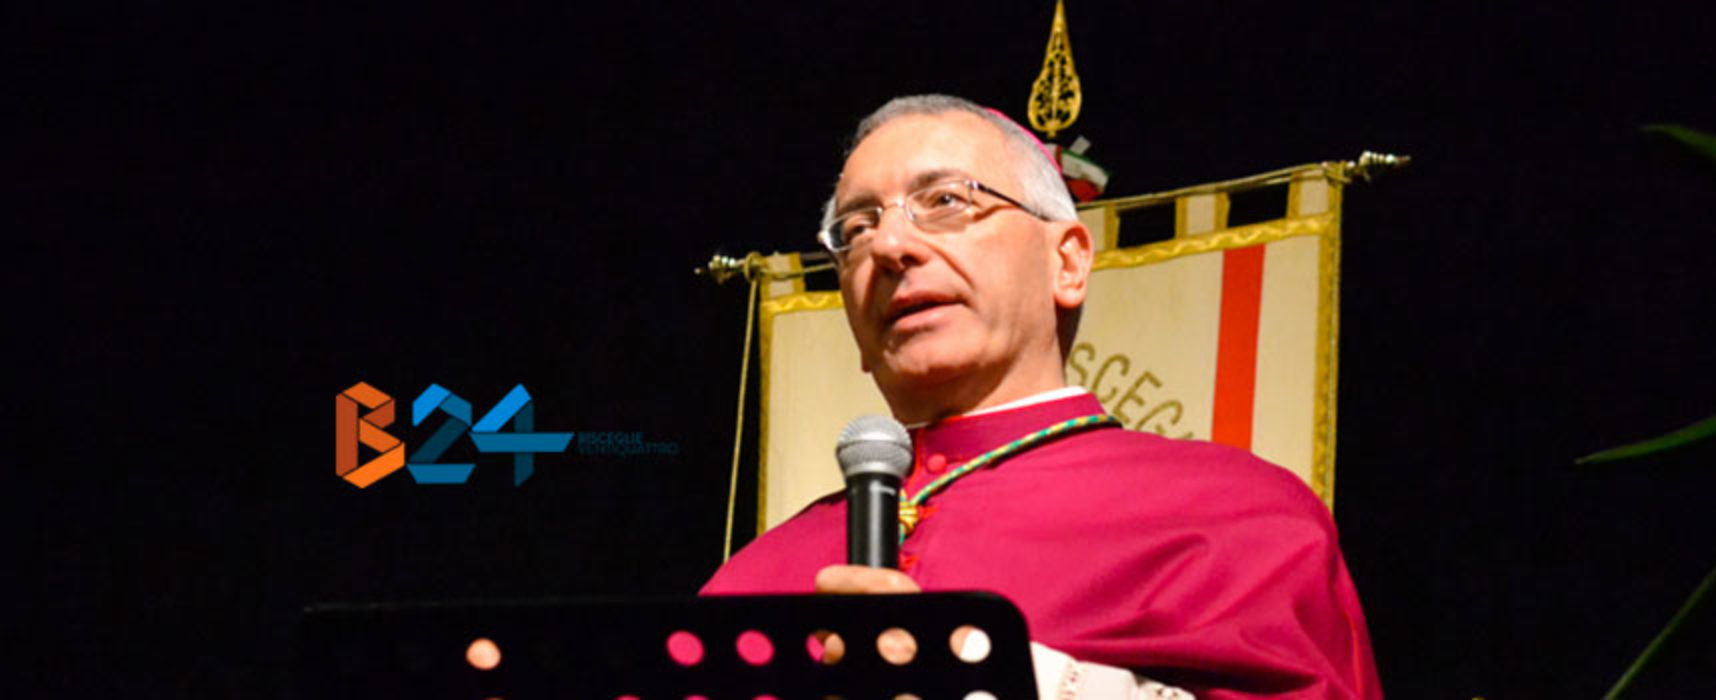 Mons. D’Ascenzo, 5 anni nell’Arcidiocesi di Trani-Barletta-Andria, il messaggio di Don Sergio Pellegrini